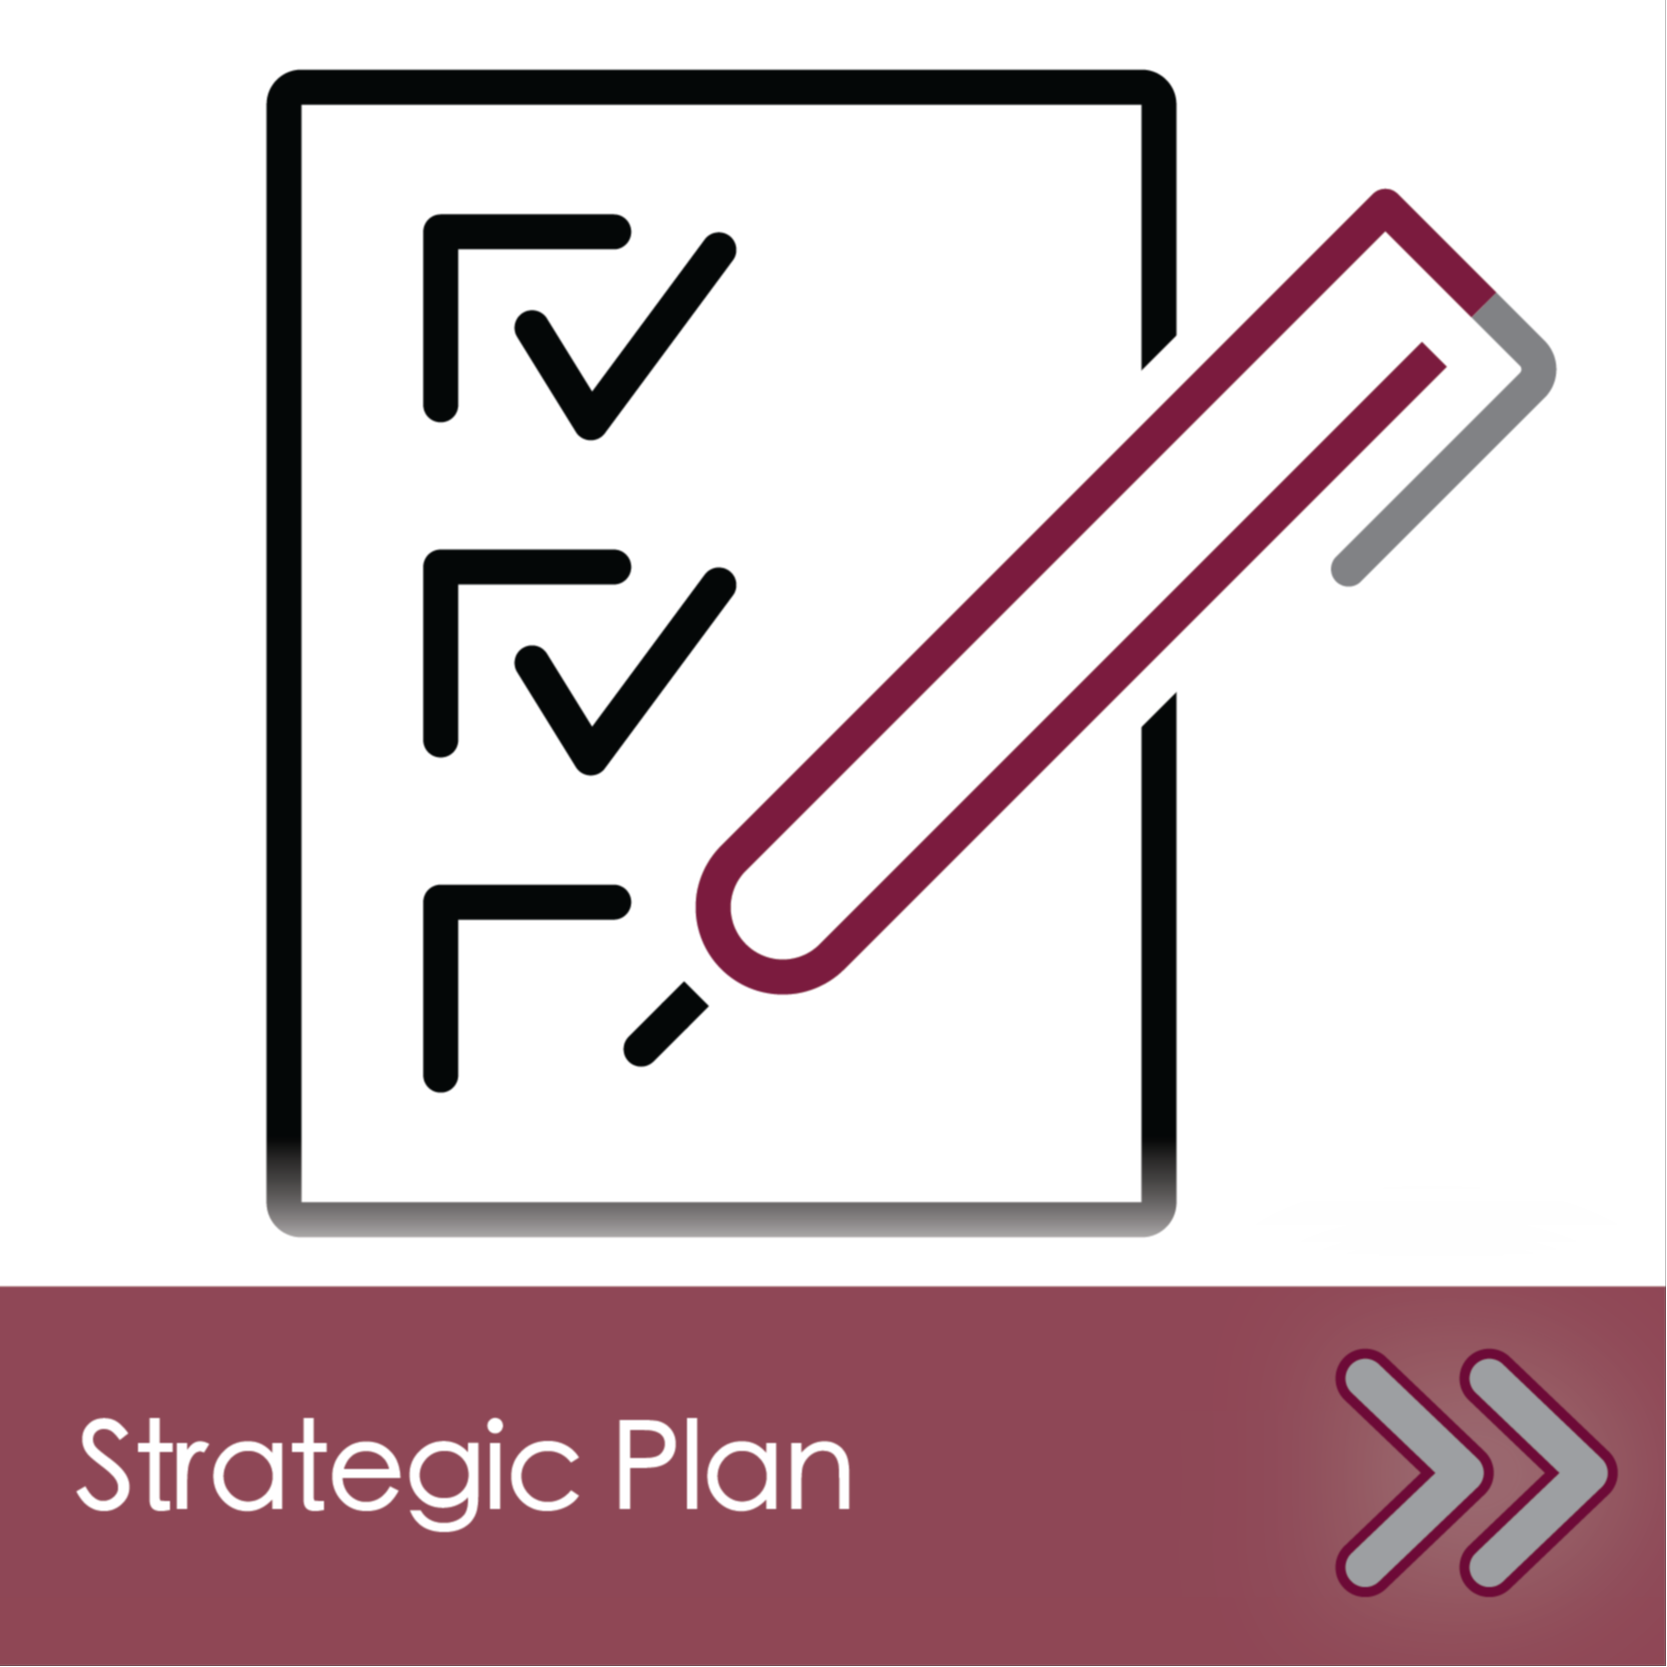 DCMO BOCES Strategic Plan Navigation Link